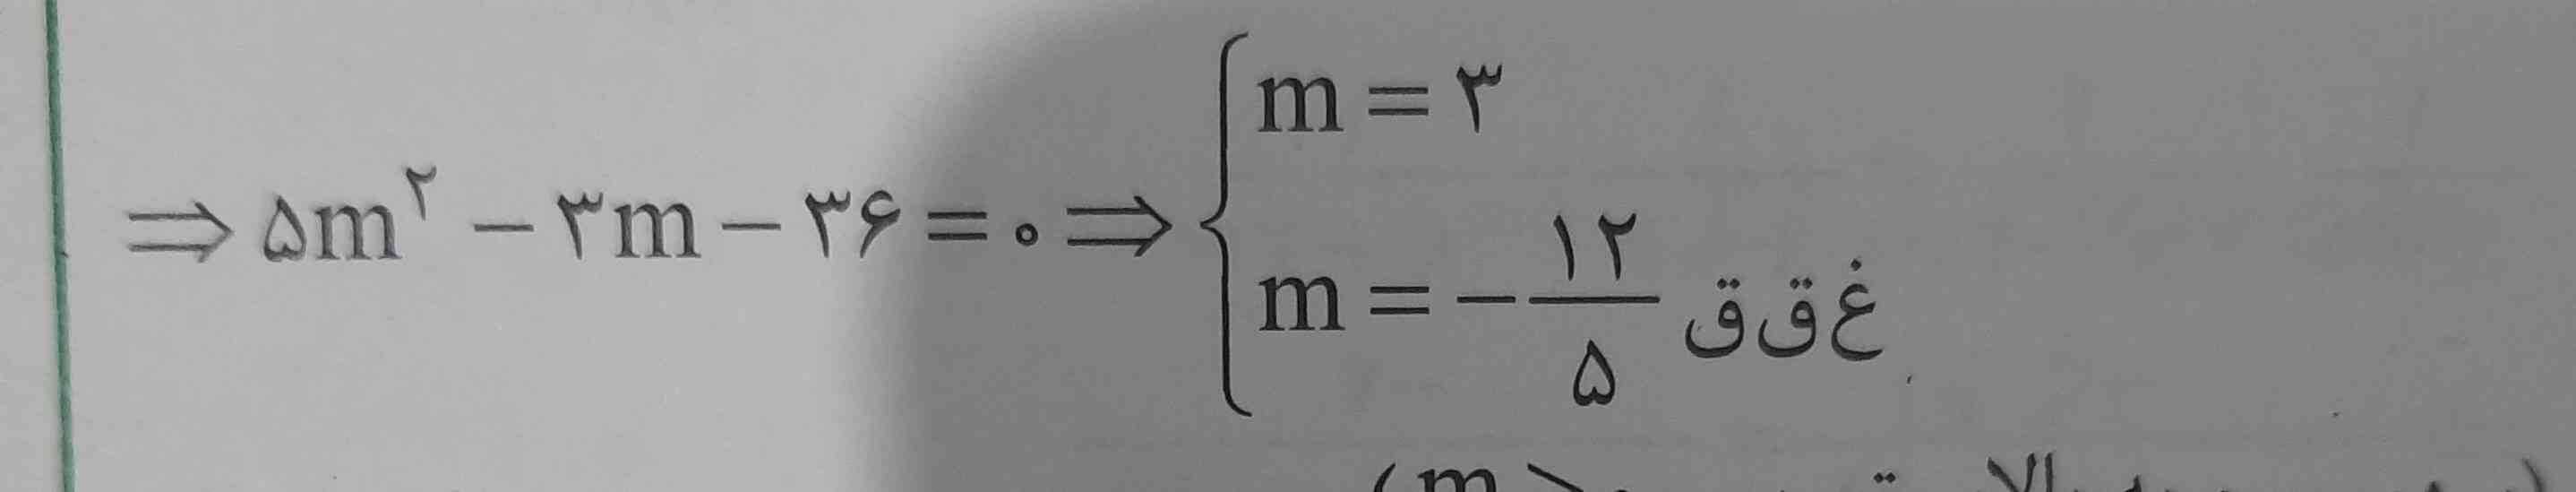 سلام میشه توضیح بدین دقیقا چطوری ریشه های این معادله رو بدست اورده و راه حلی که هست رو بفرستین.🙏🏻 (از دلتا که میرم به جواب نمیرسم)🫠